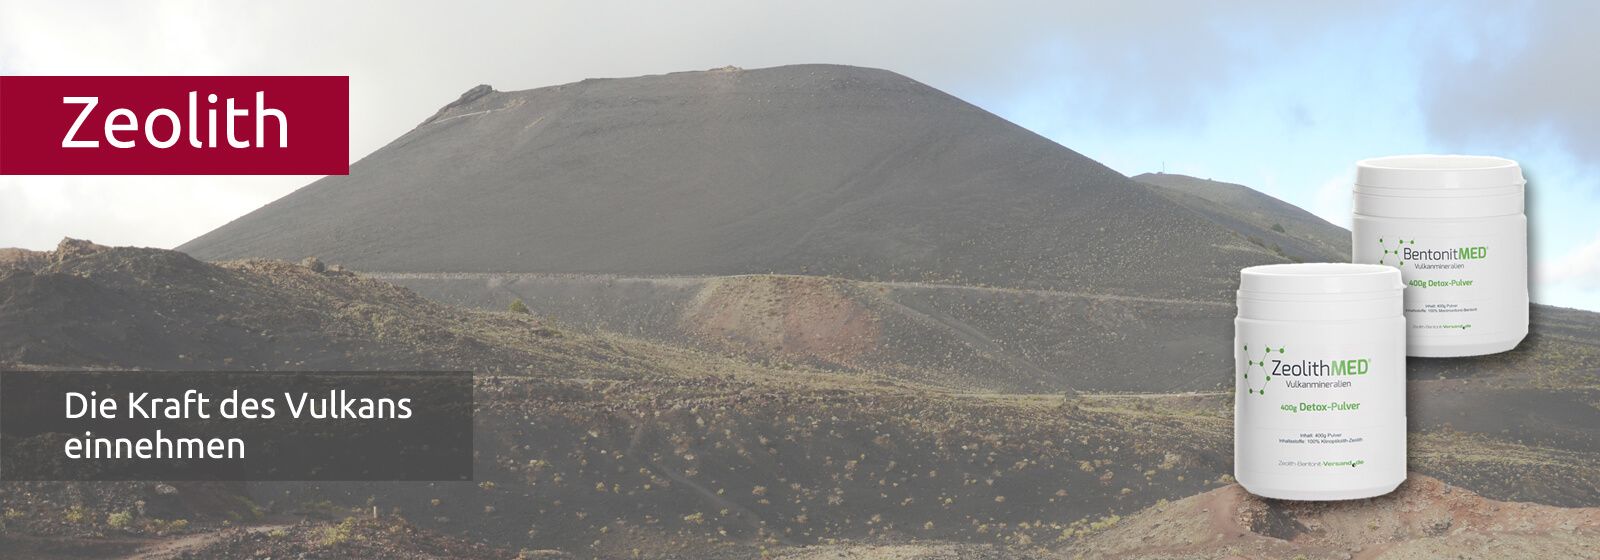 Karge Vulkanlandschaft mit brauner Lava